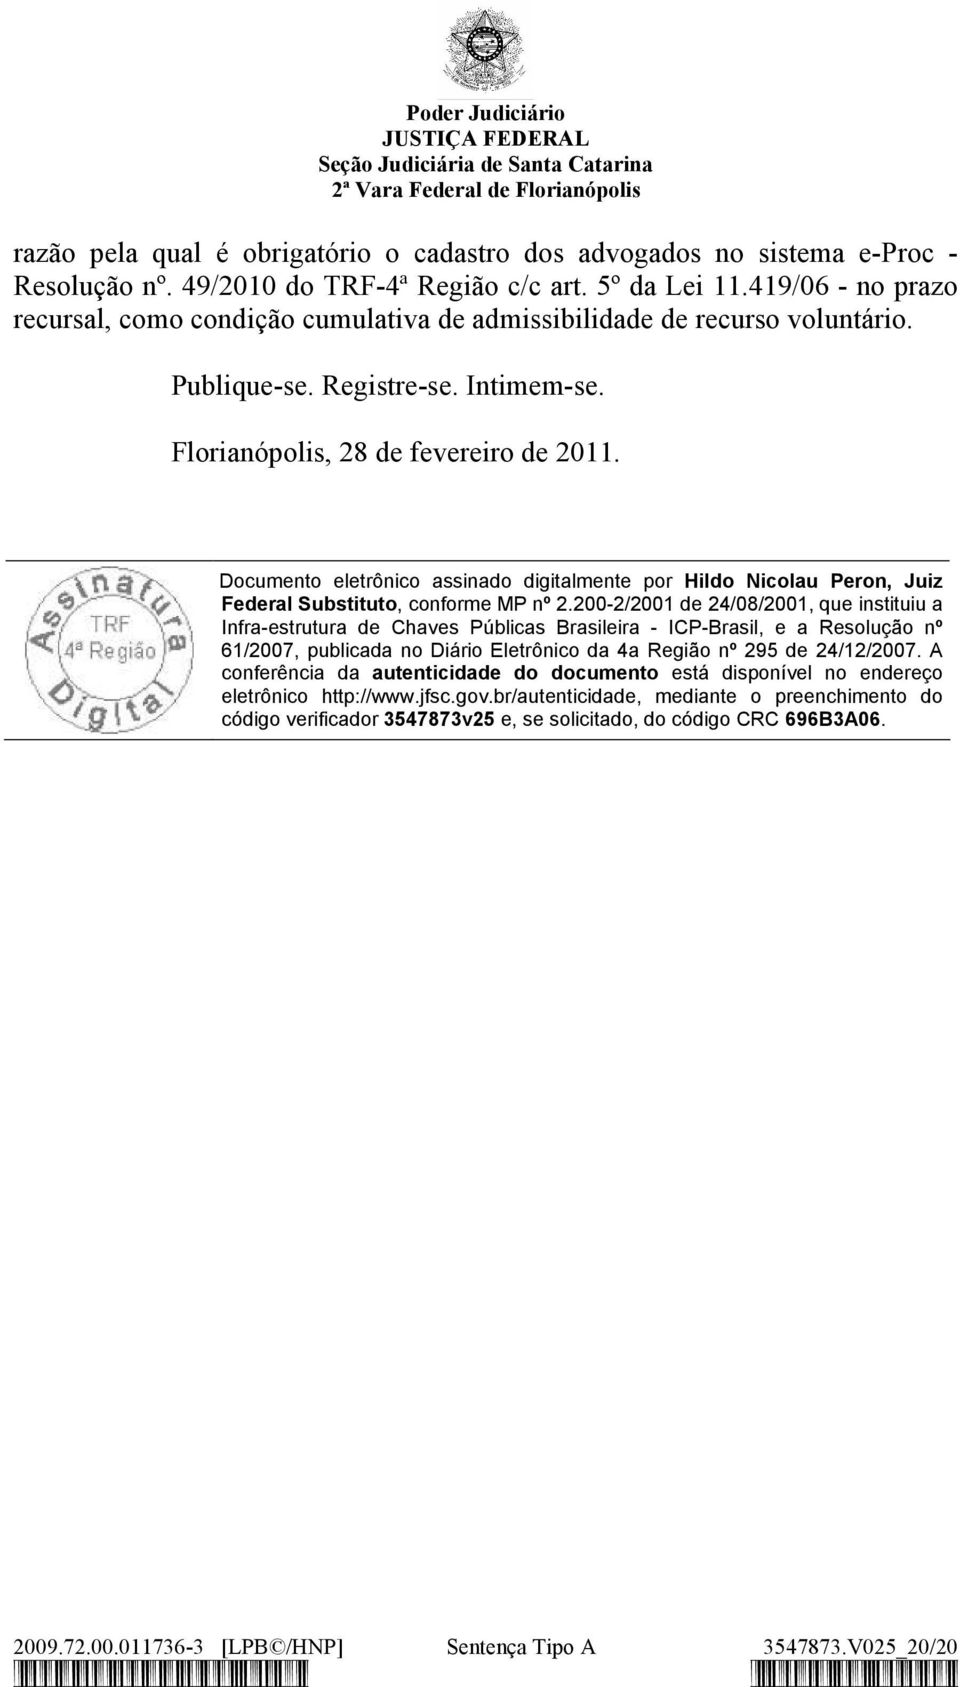 Documento eletrônico assinado digitalmente por Hildo Nicolau Peron, Juiz Federal Substituto, conforme MP nº 2.